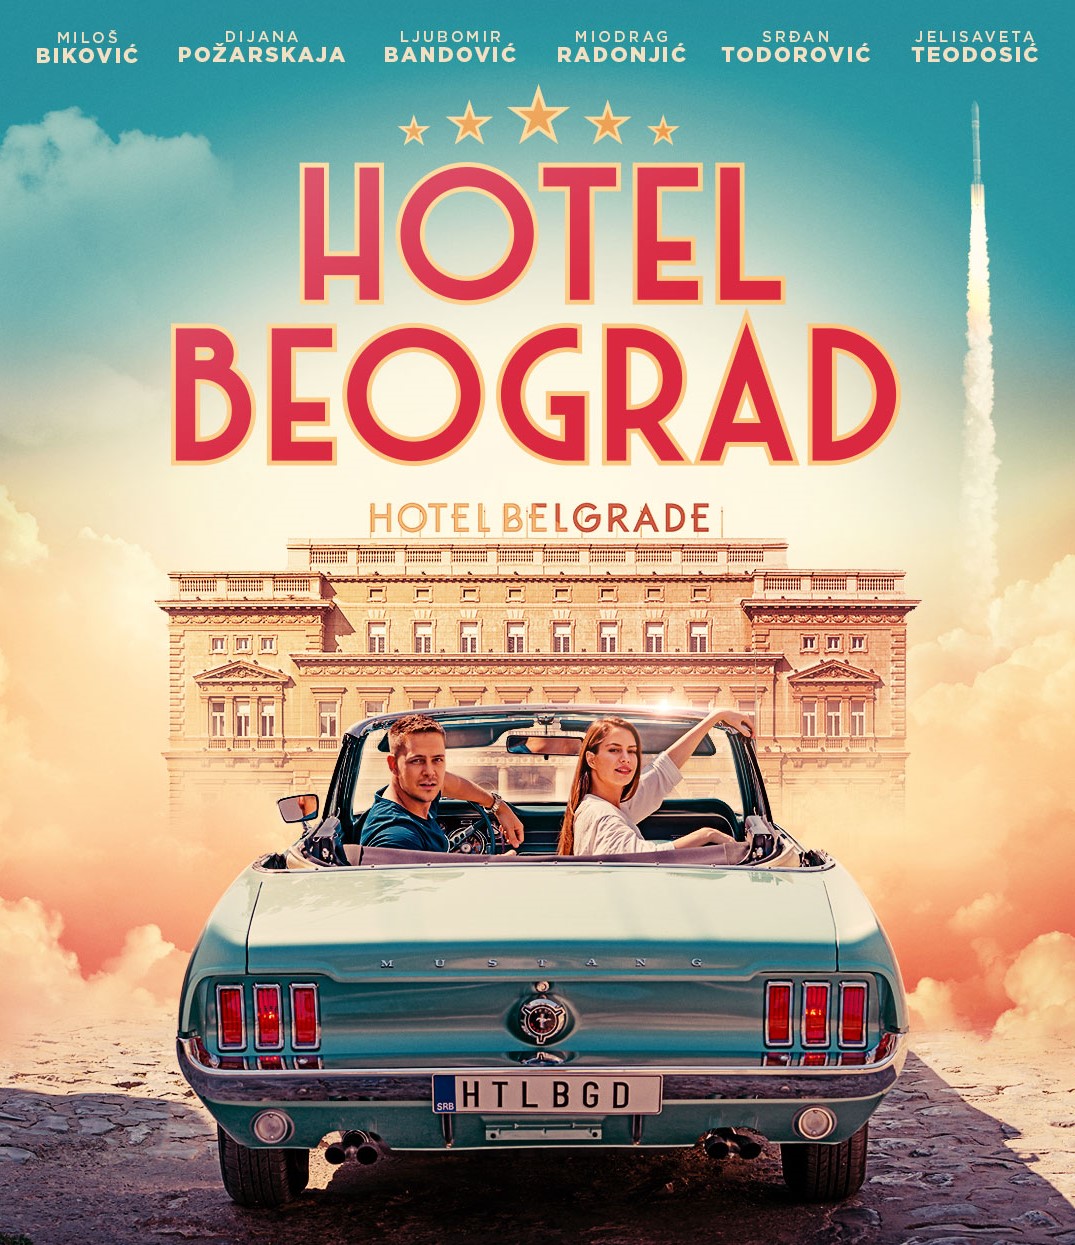 Hotel-Beograd-plakat-MUSTANG-insta-1080x1350a